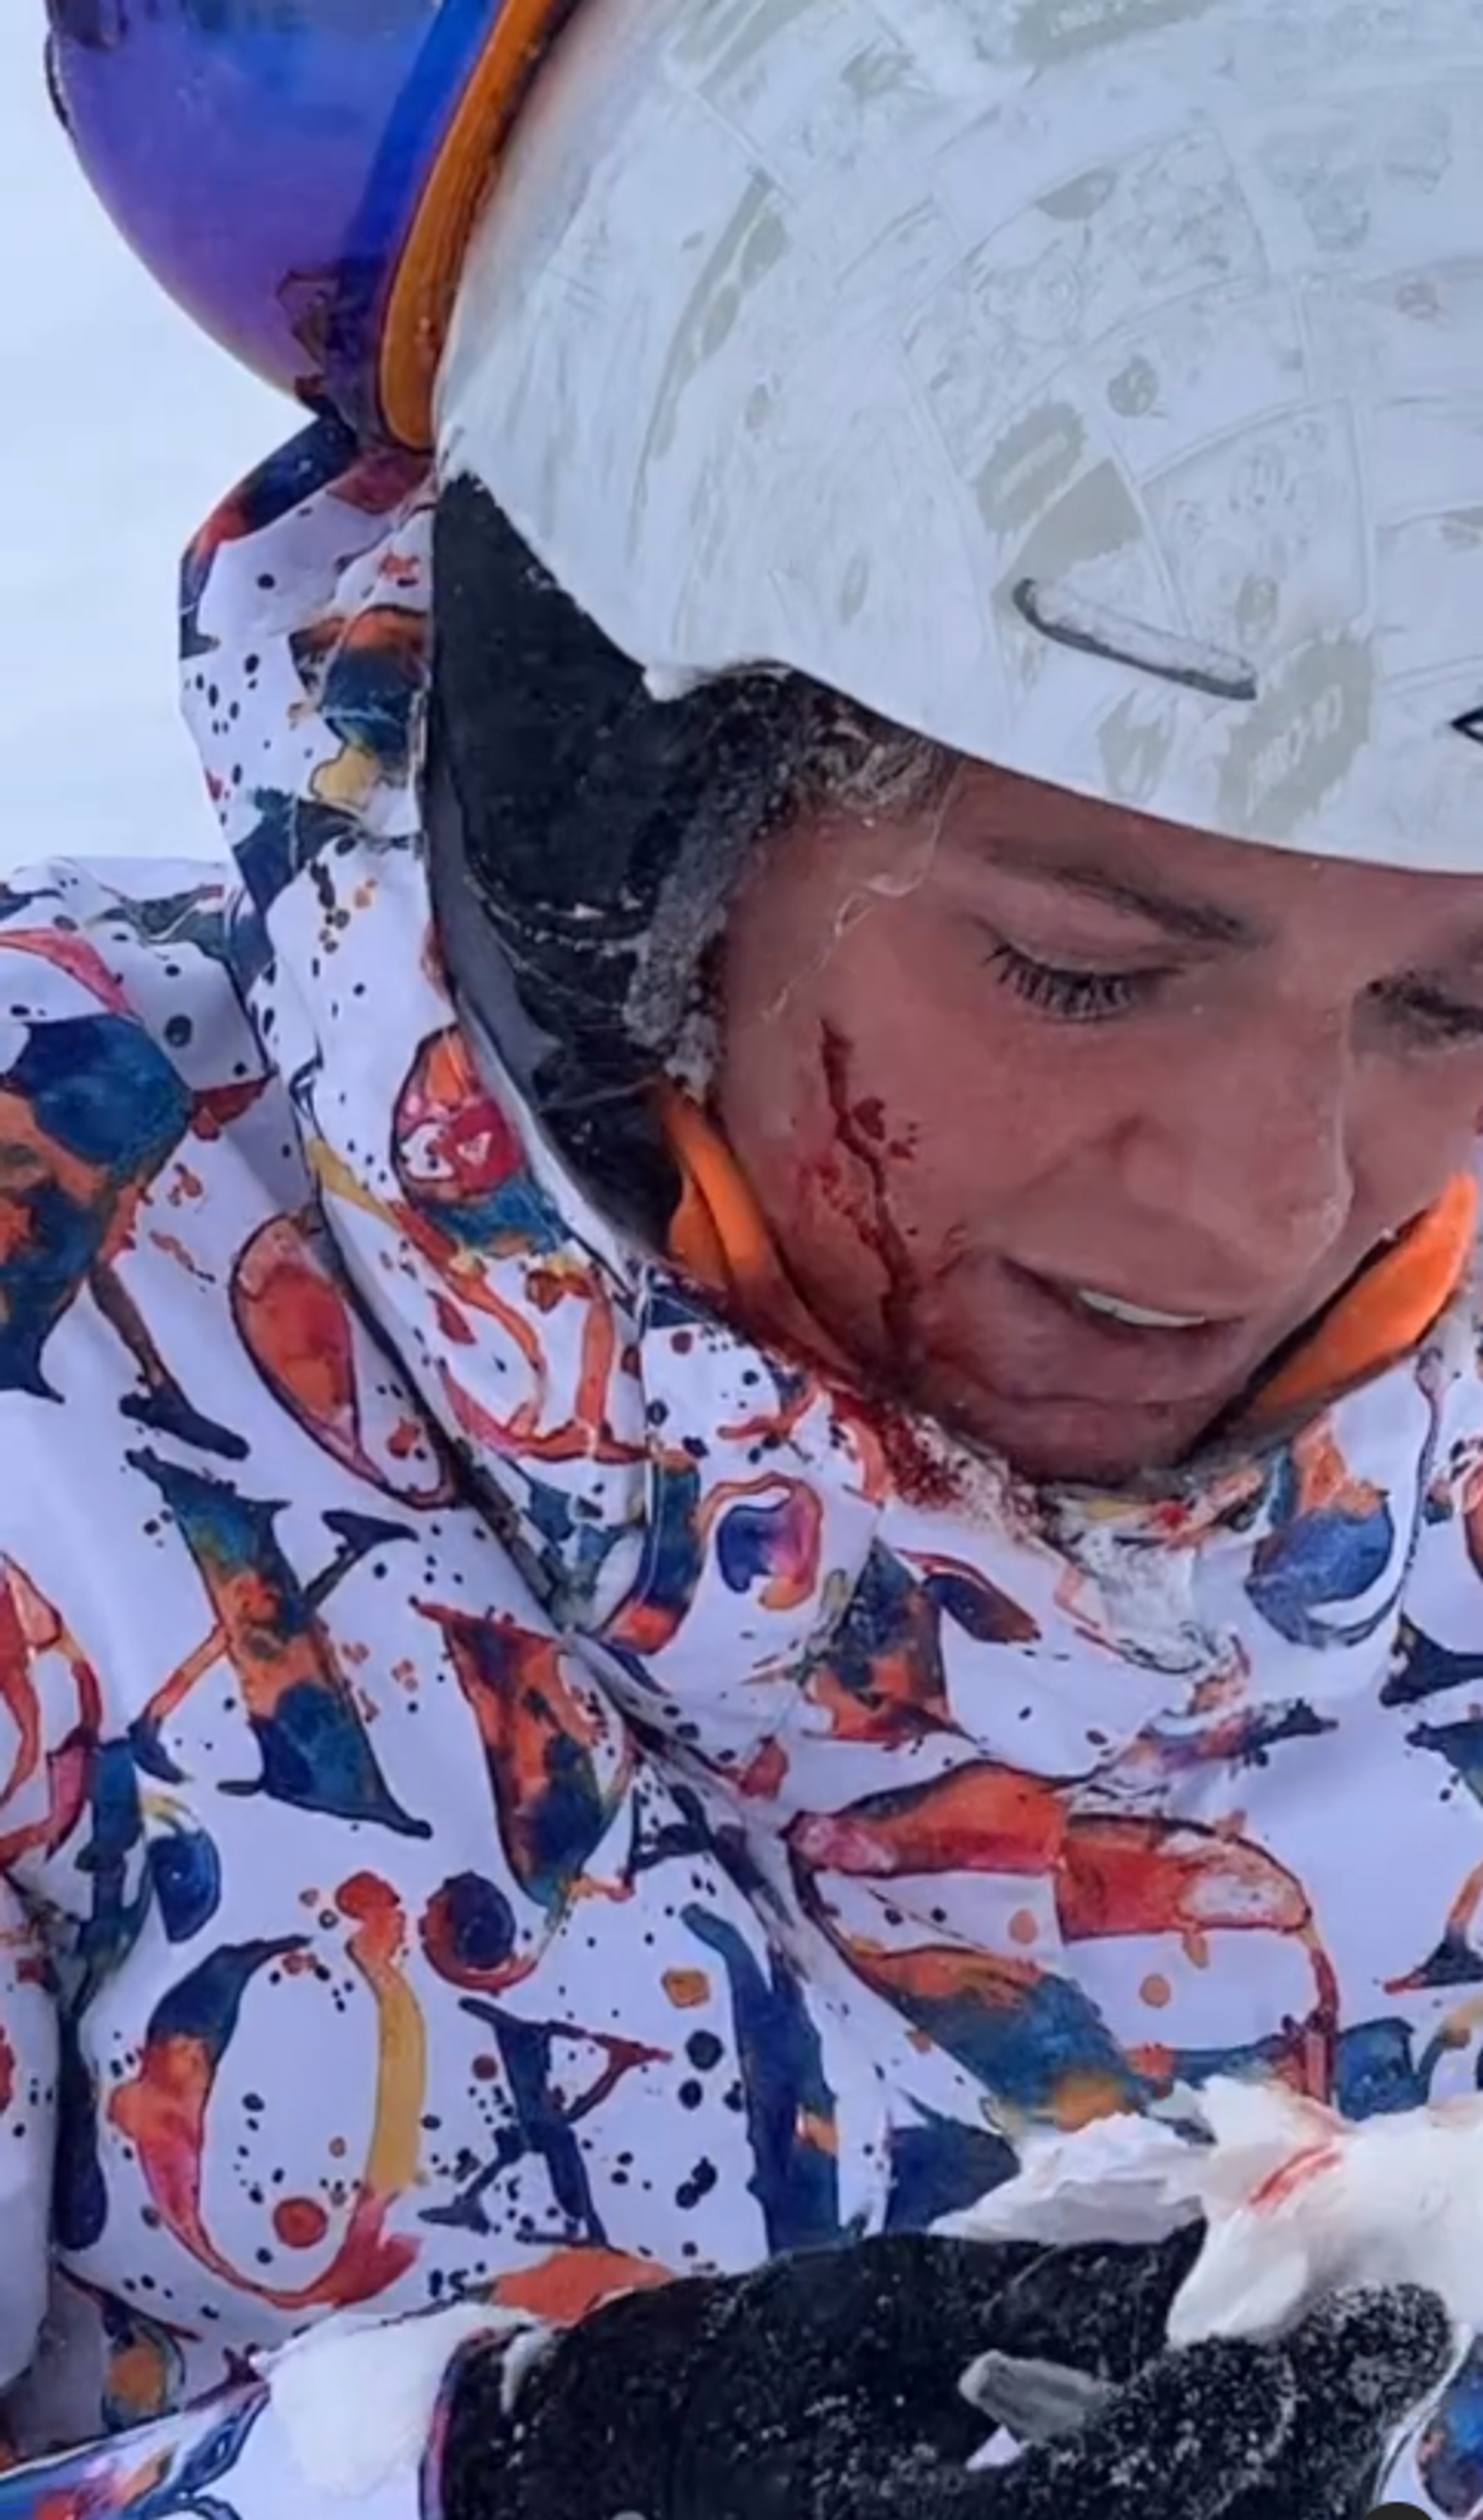 Пловчиха Юлия Ефимова разбила лицо во время катания на сноуборде - РИА Новости, 1920, 10.02.2023